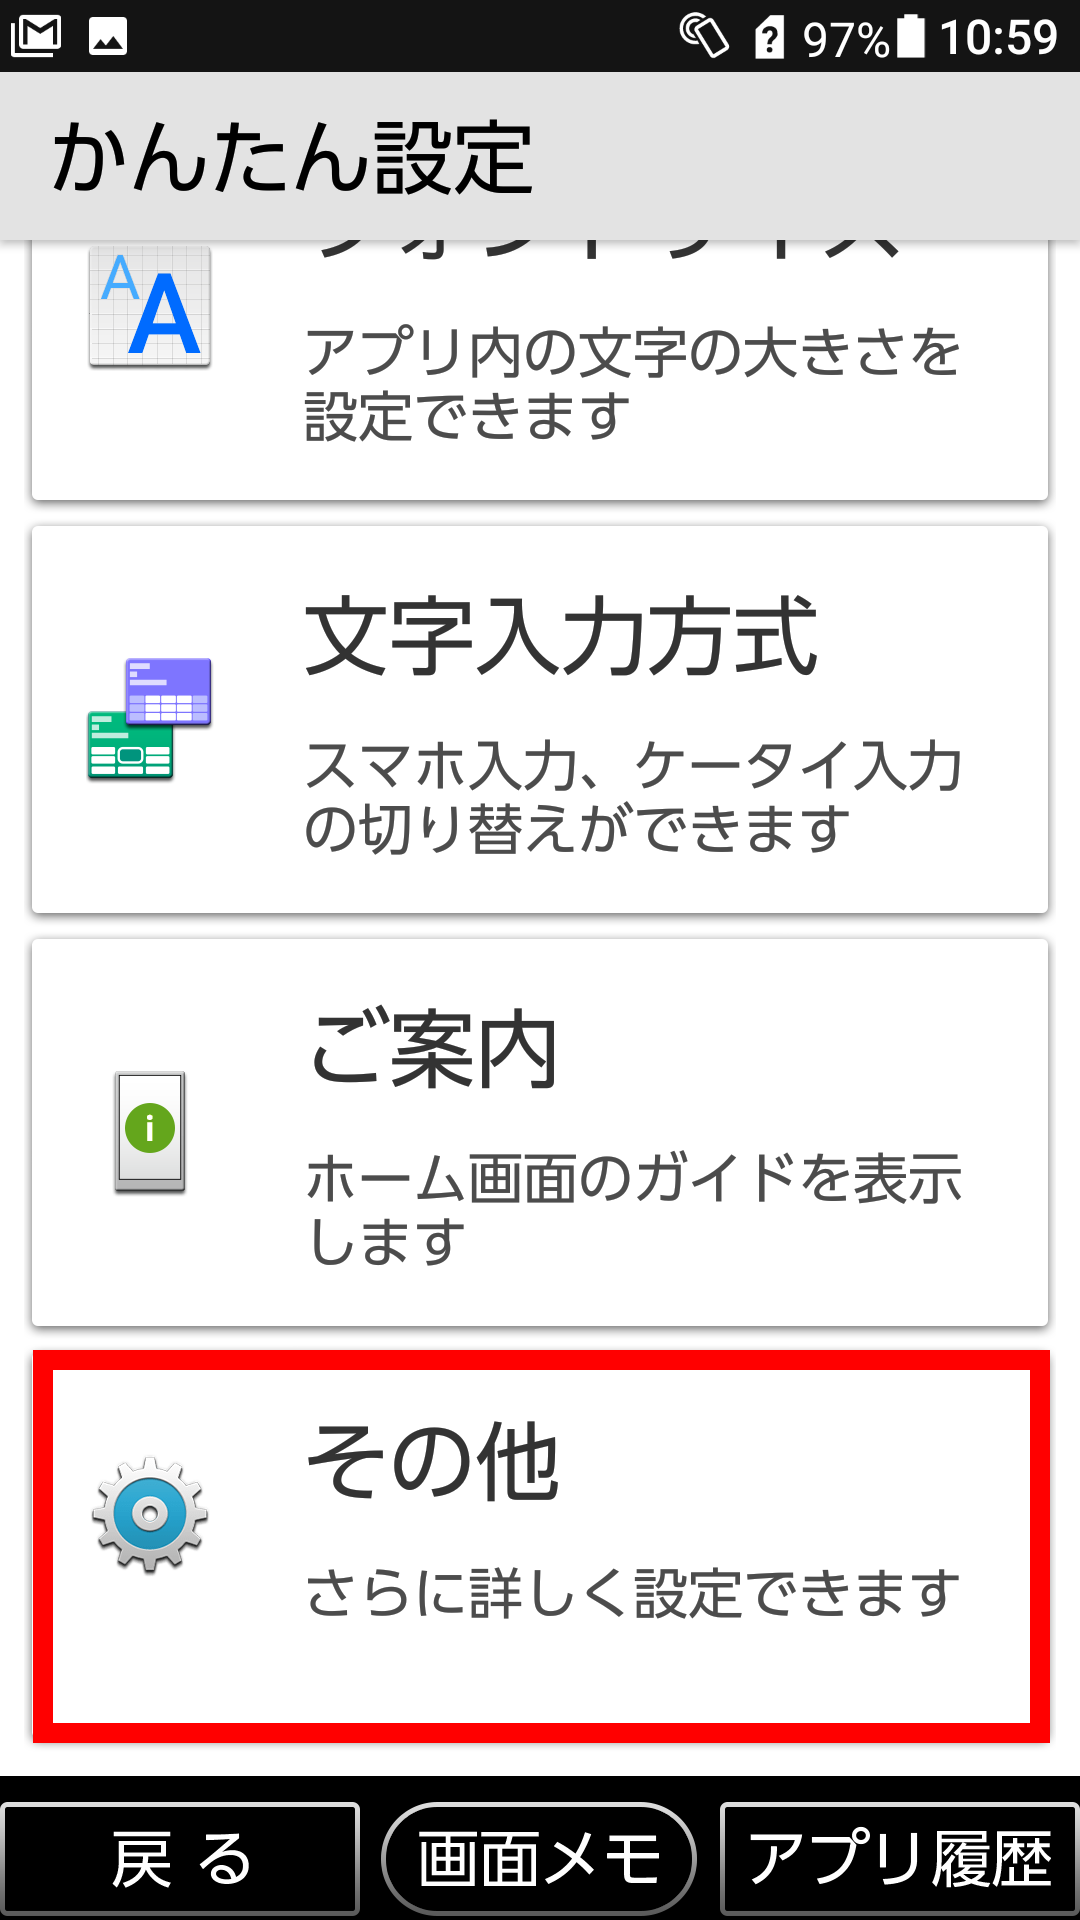 必要のないアプリを削除したい 京セラ Basio3 Jcomサポート